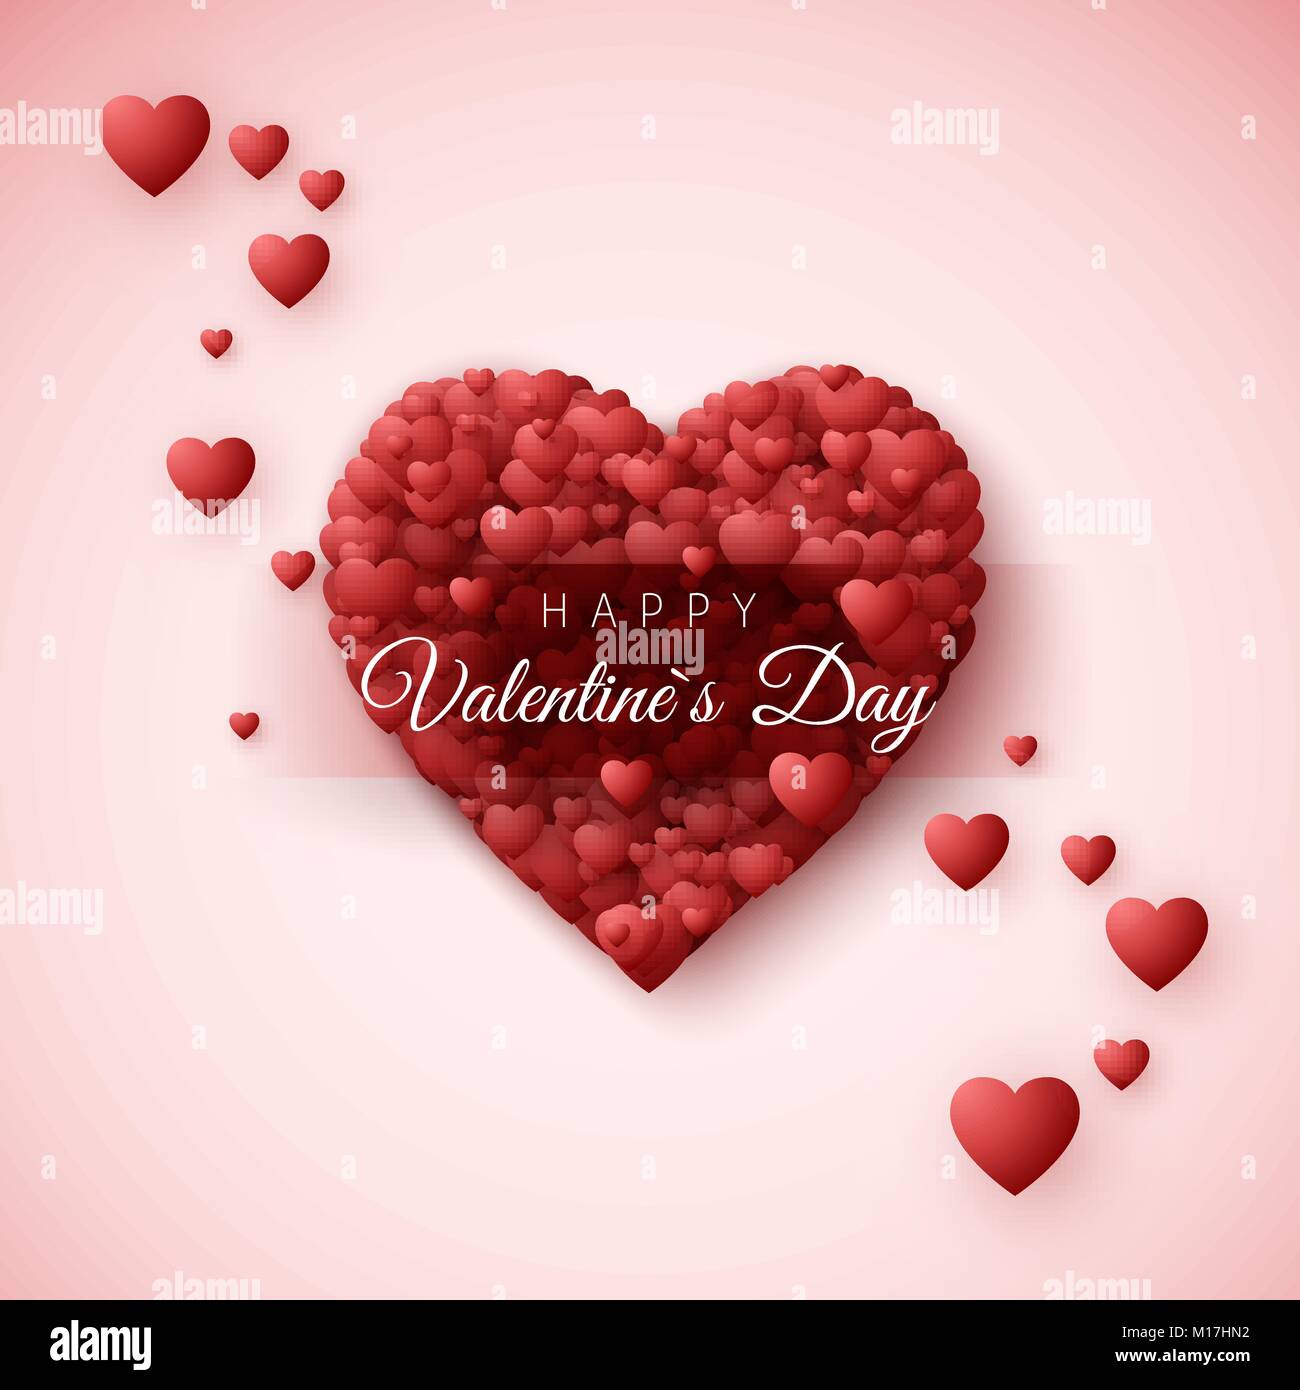 Happy Valentines Day greeting card. Cuore telaio sono costituiti da molti cuori e etichetta con desiderio felice il giorno di San Valentino. Modello di romantico per il 14 febbraio holi Illustrazione Vettoriale